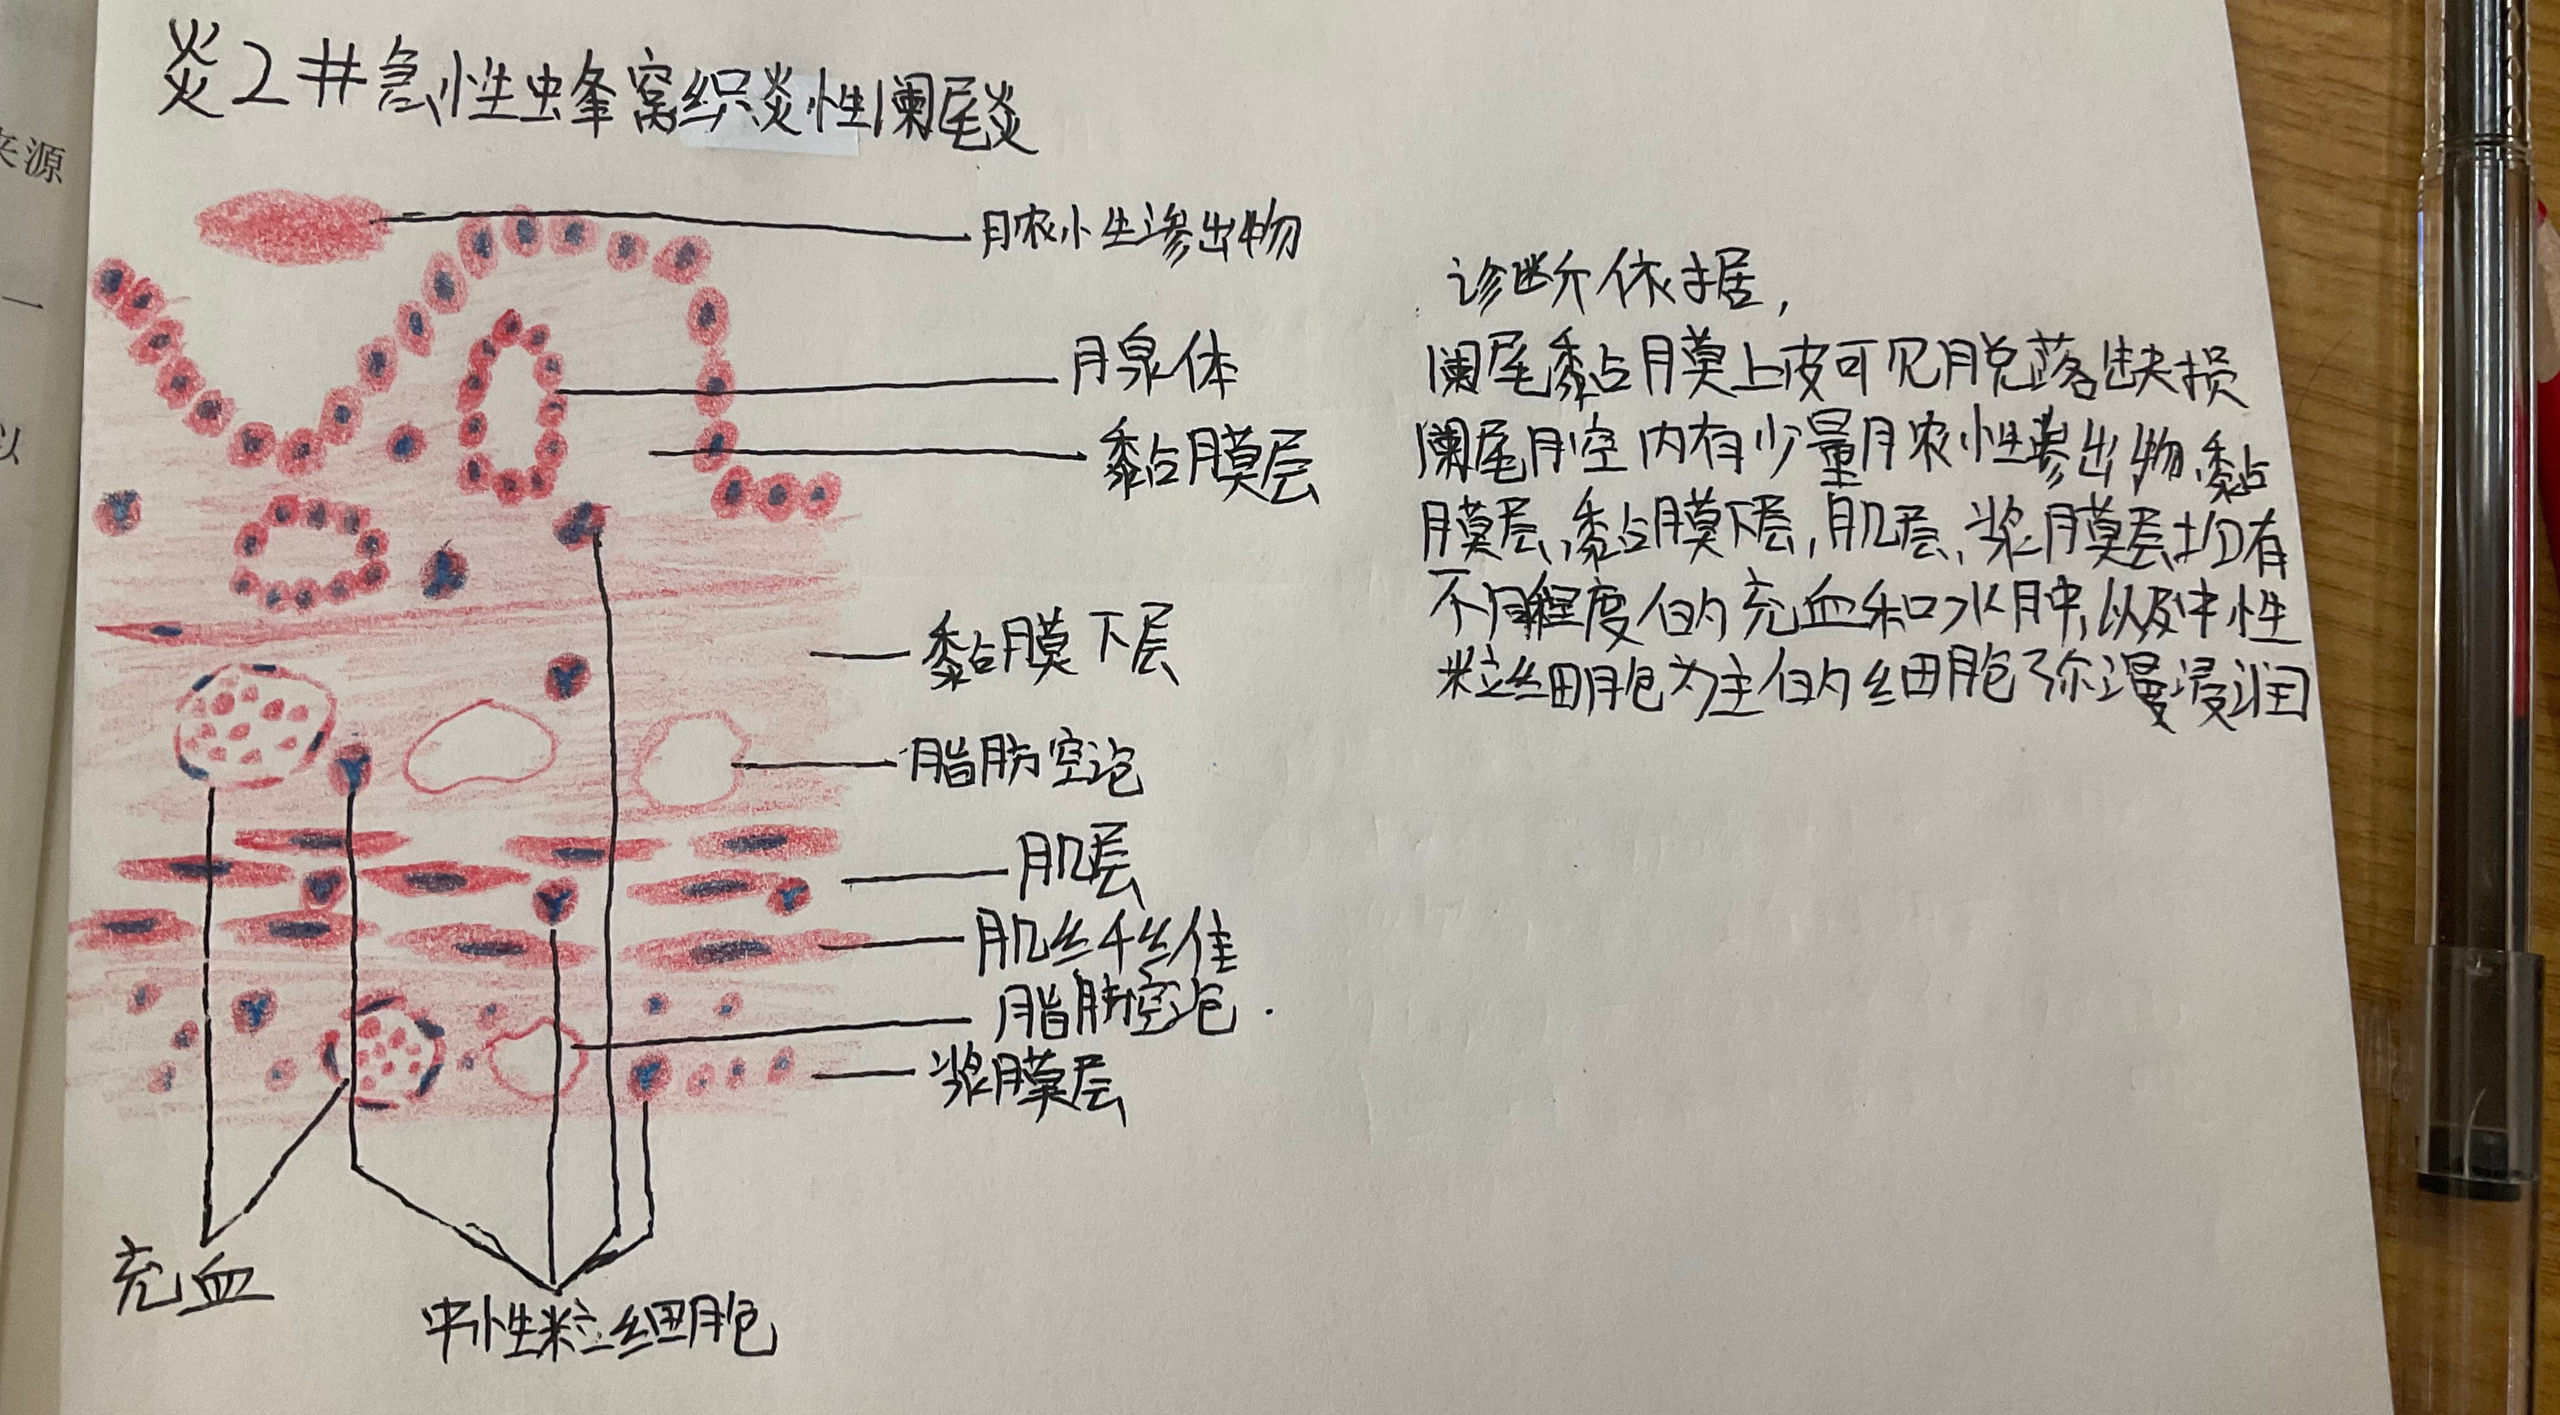 急性蜂窝织炎性阑尾炎假膜性炎镜下红蓝铅笔手绘图